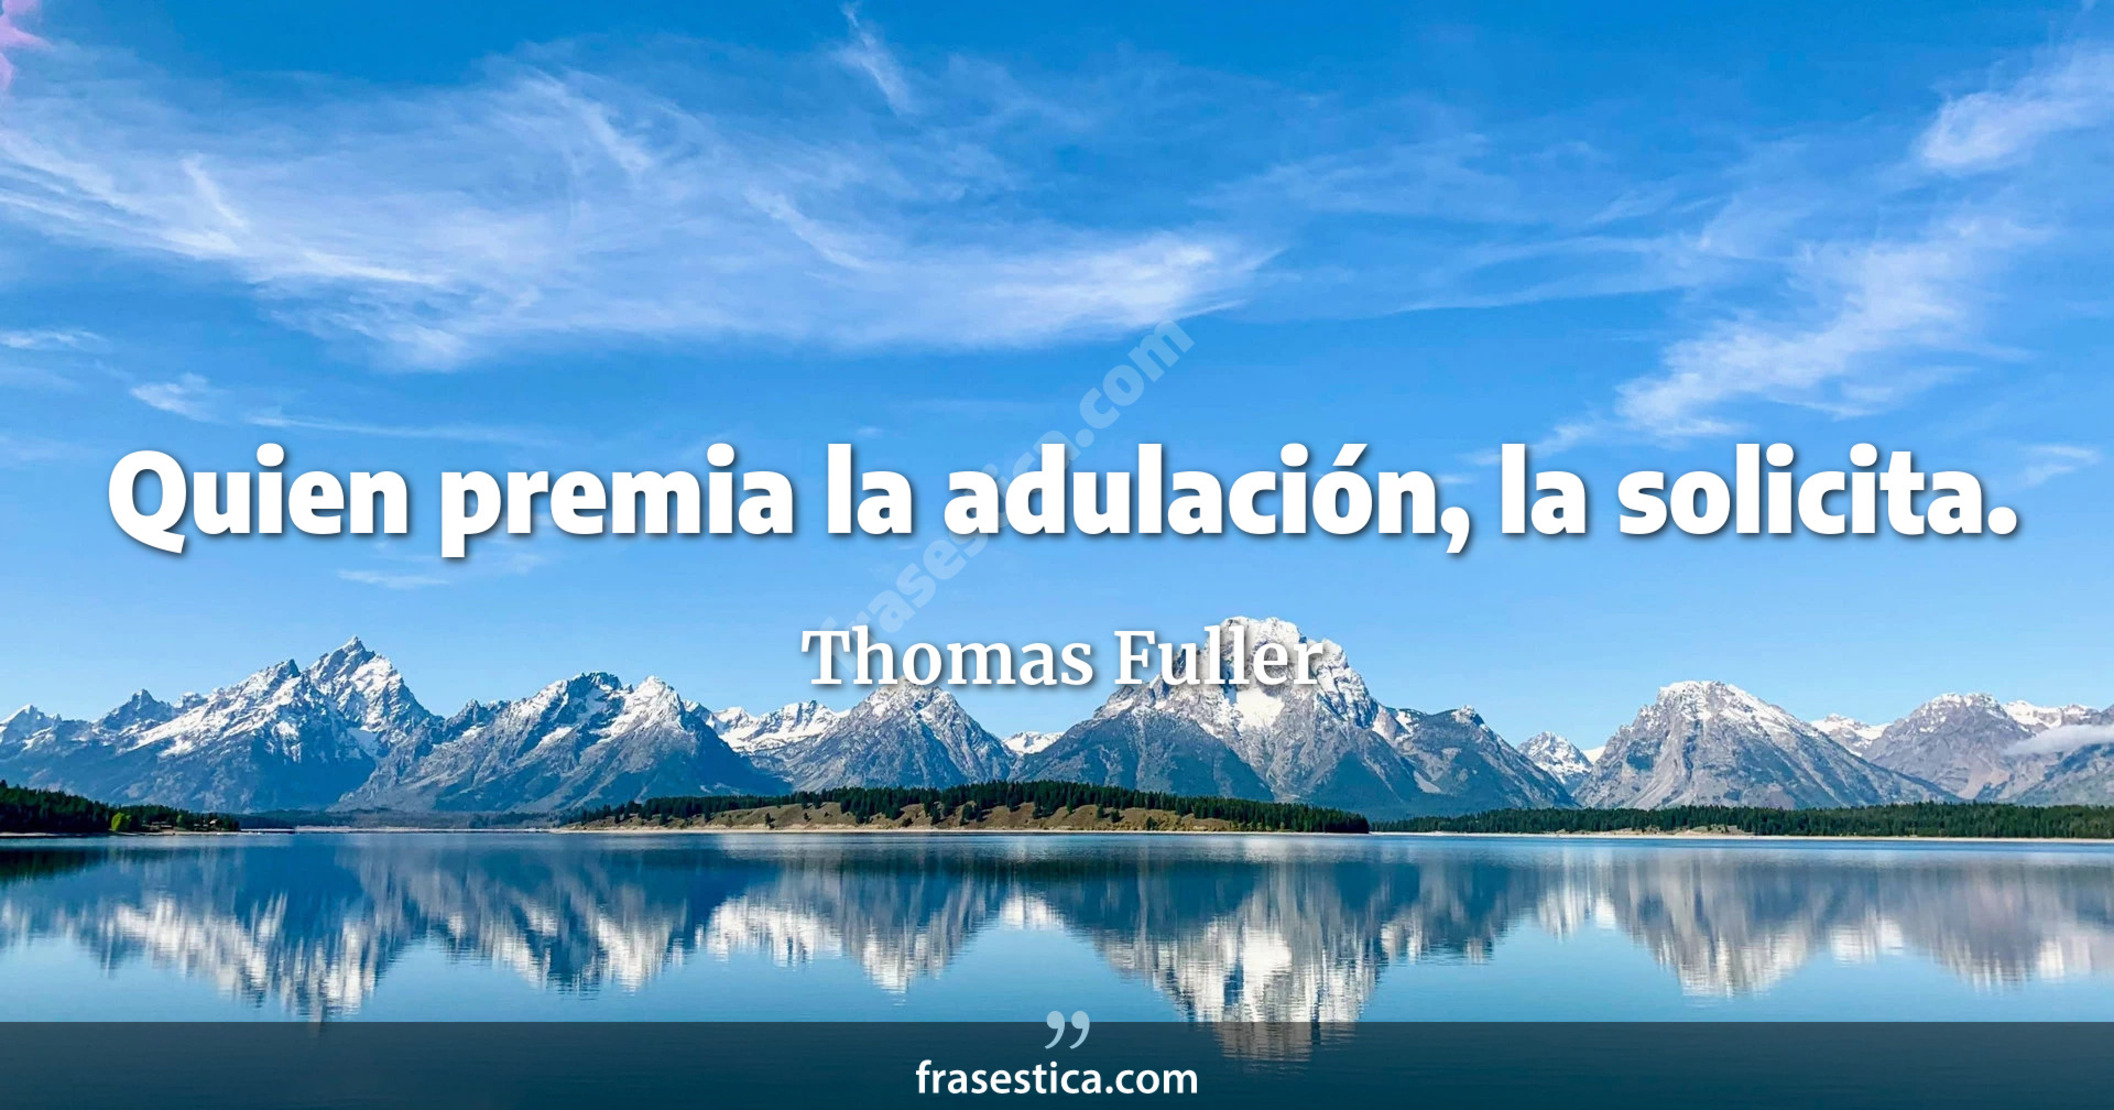 Quien premia la adulación, la solicita. - Thomas Fuller